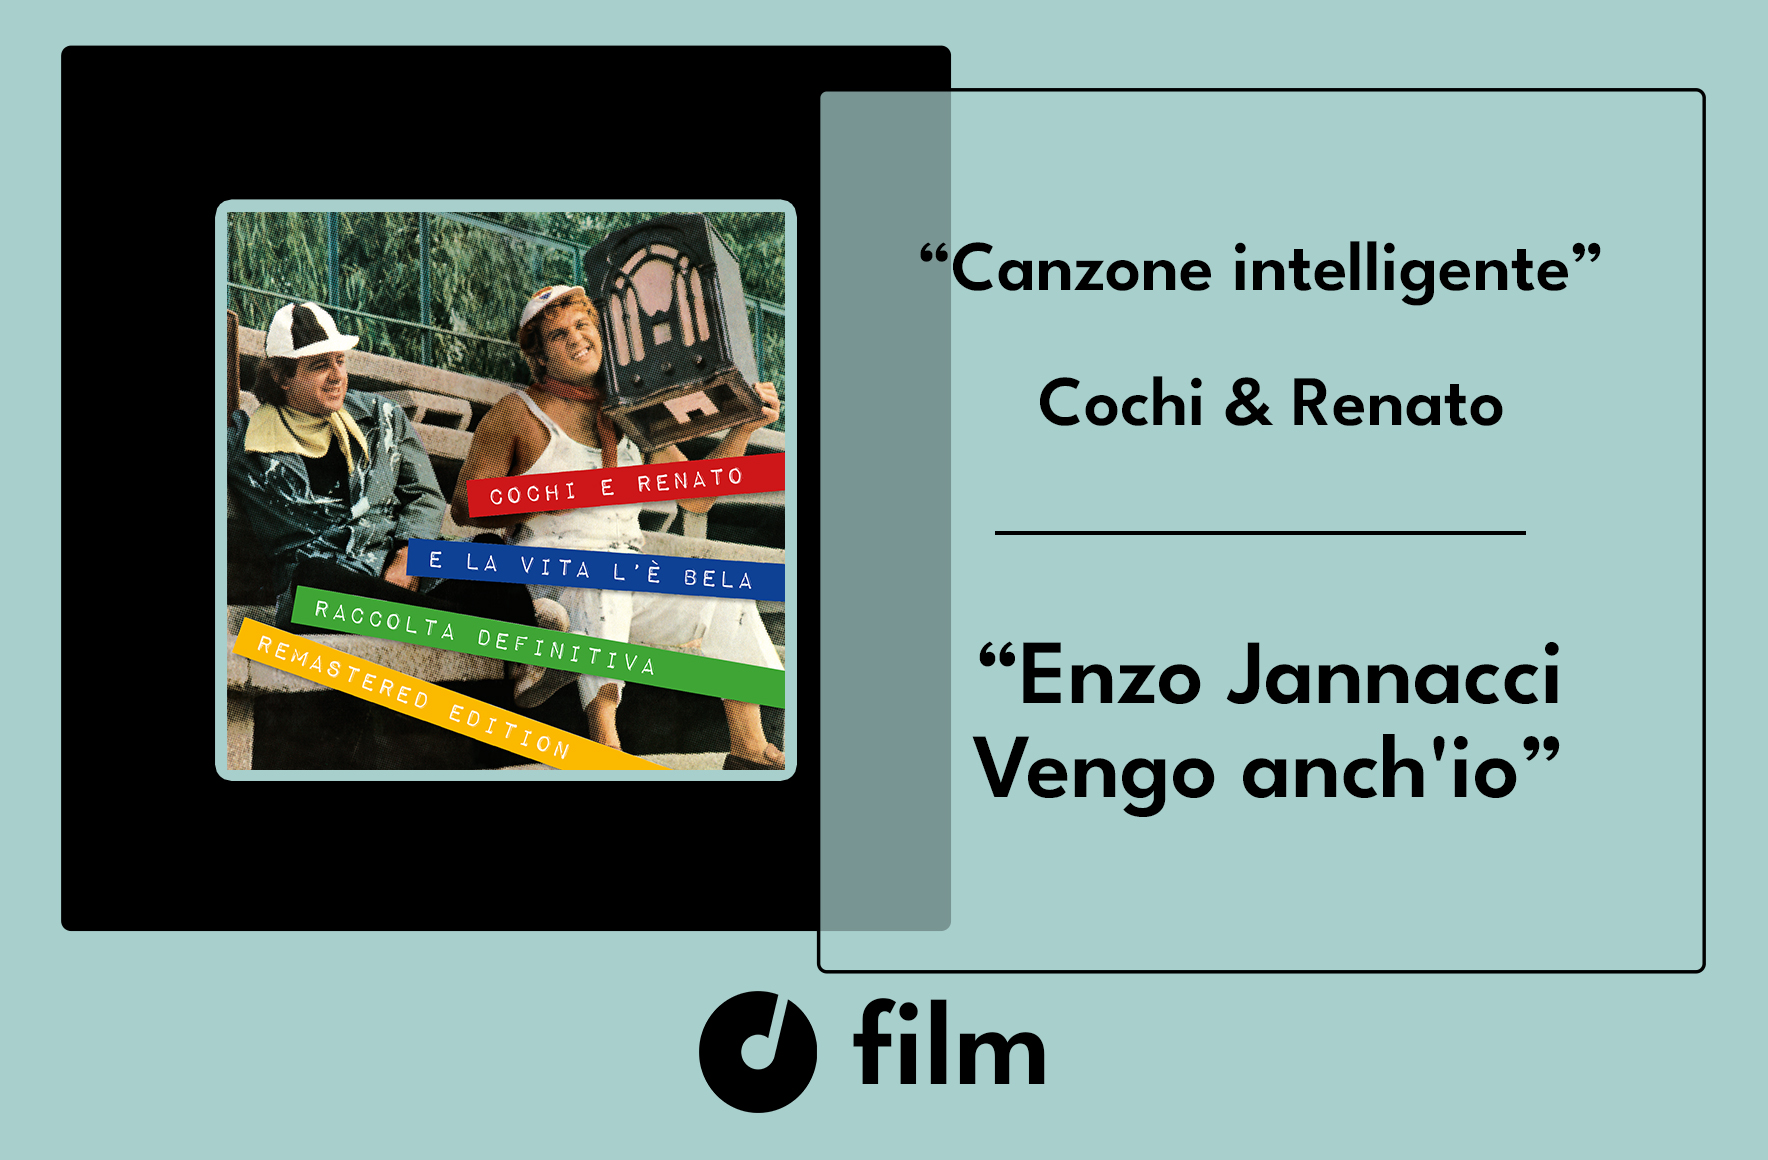 Enzo Jannacci_Vengo anche io_Canzone intelligente_Cochi e renato_CASE HISTORY_film